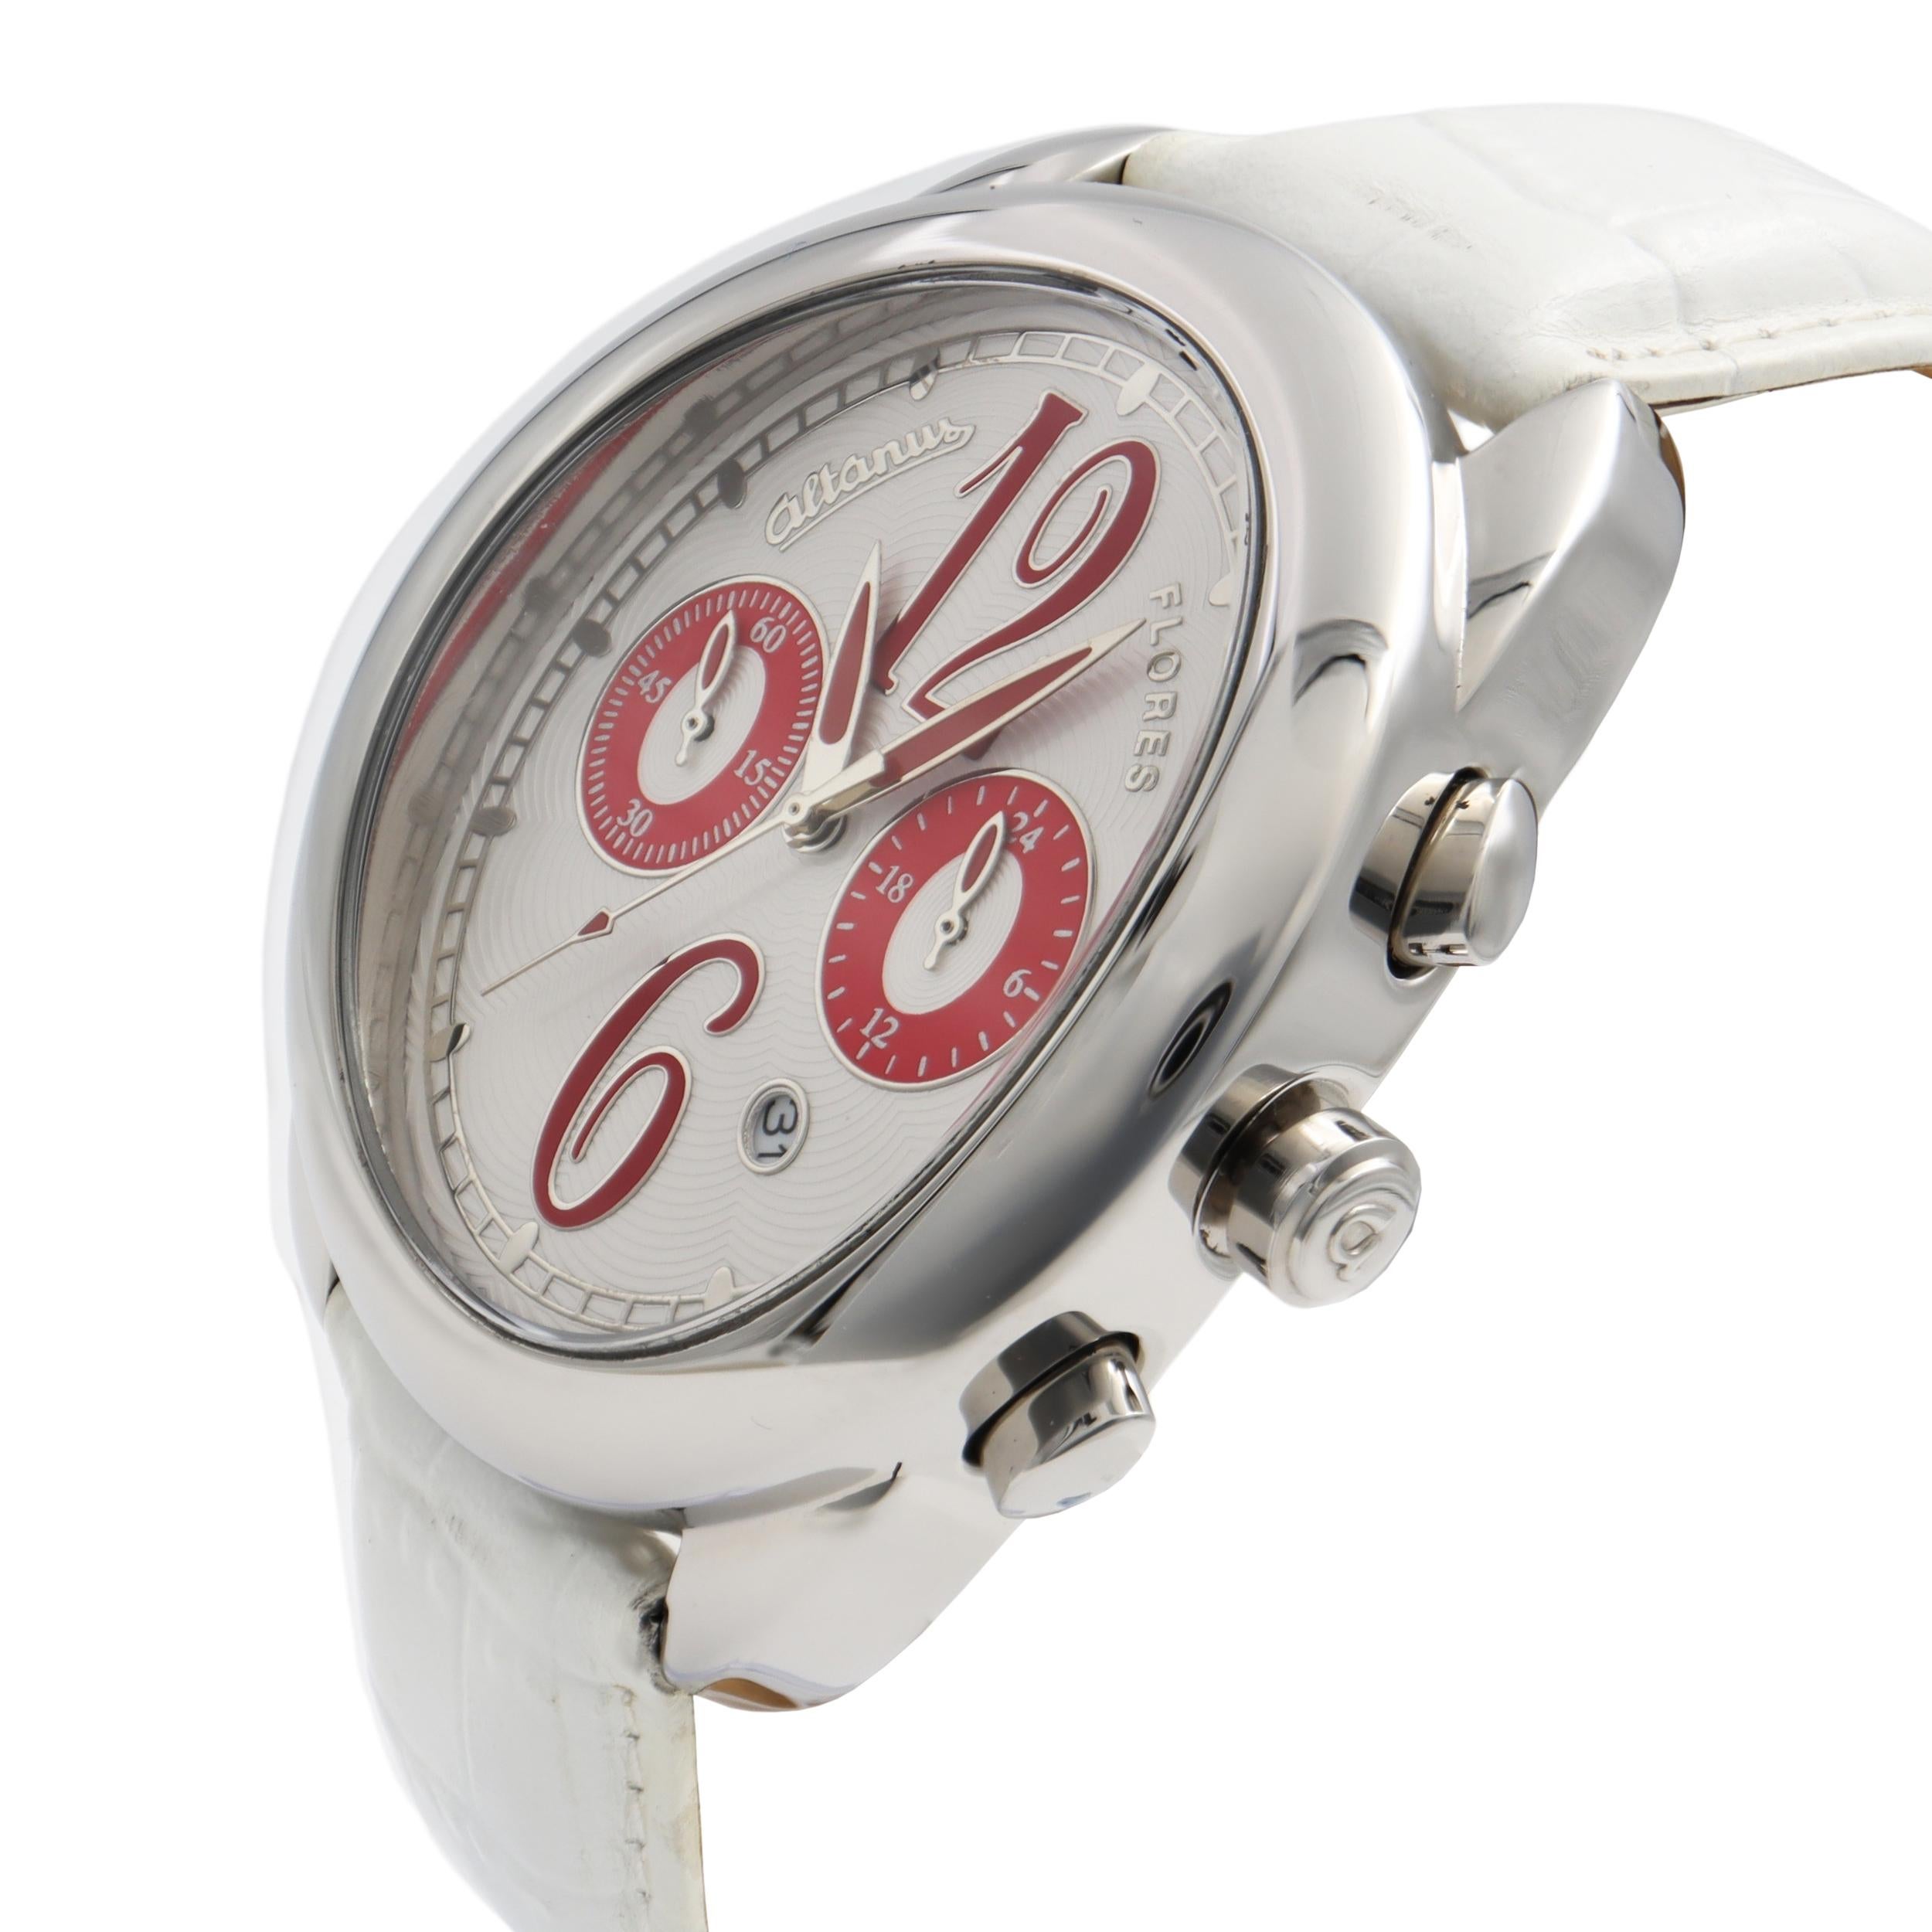 altanus watch price